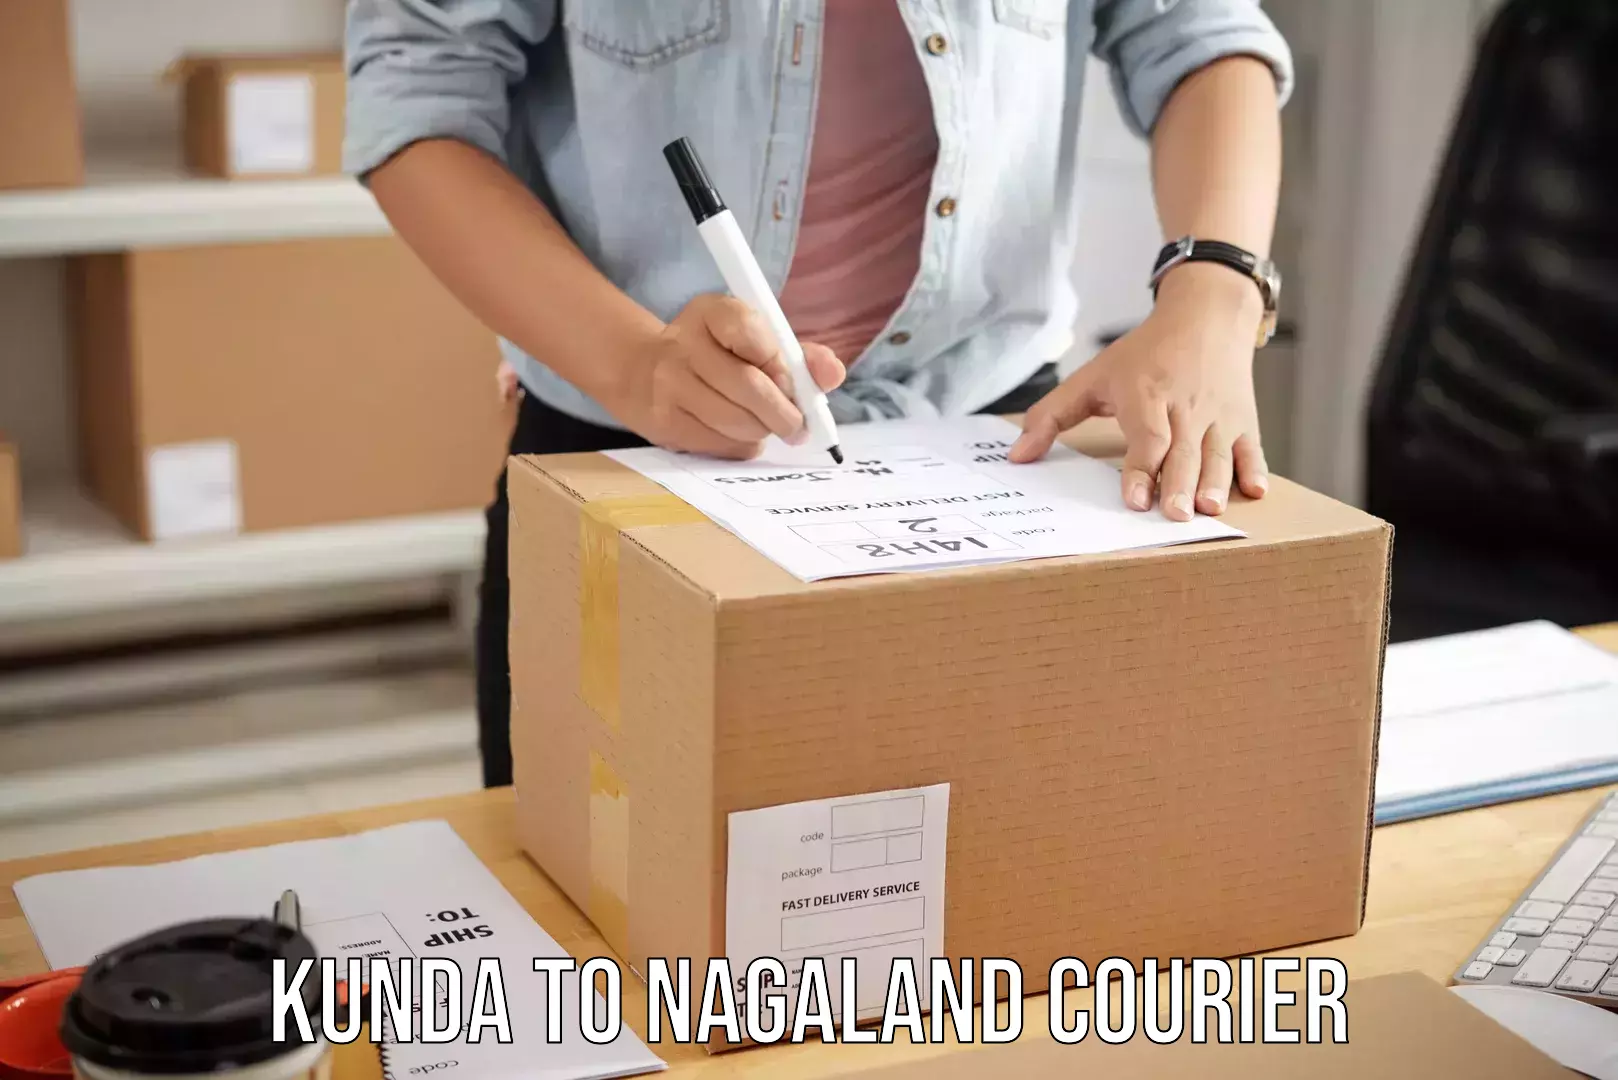 Quick luggage shipment Kunda to Nagaland